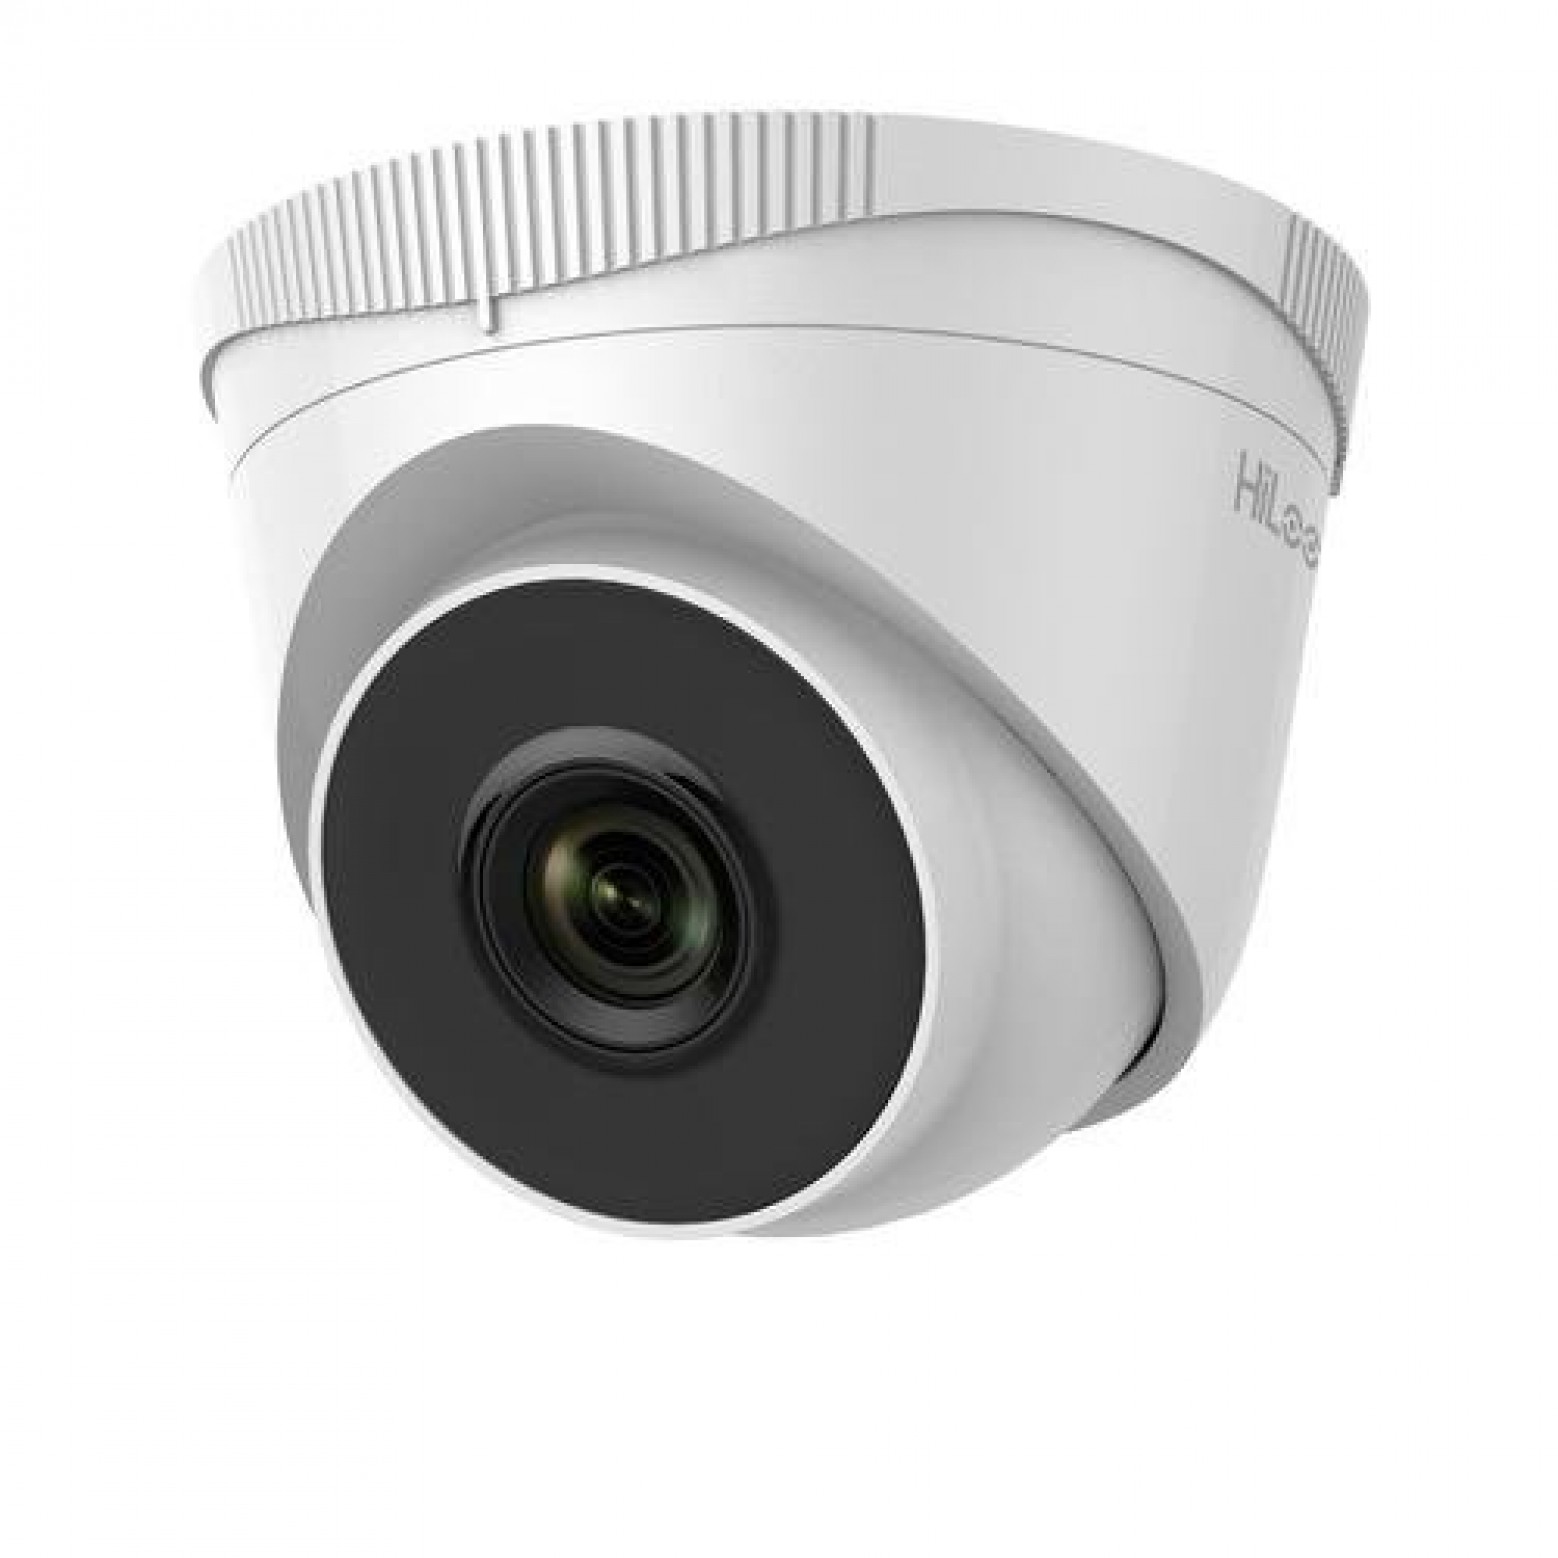 HiLook IPC-T240H 4 megapixel turret camera